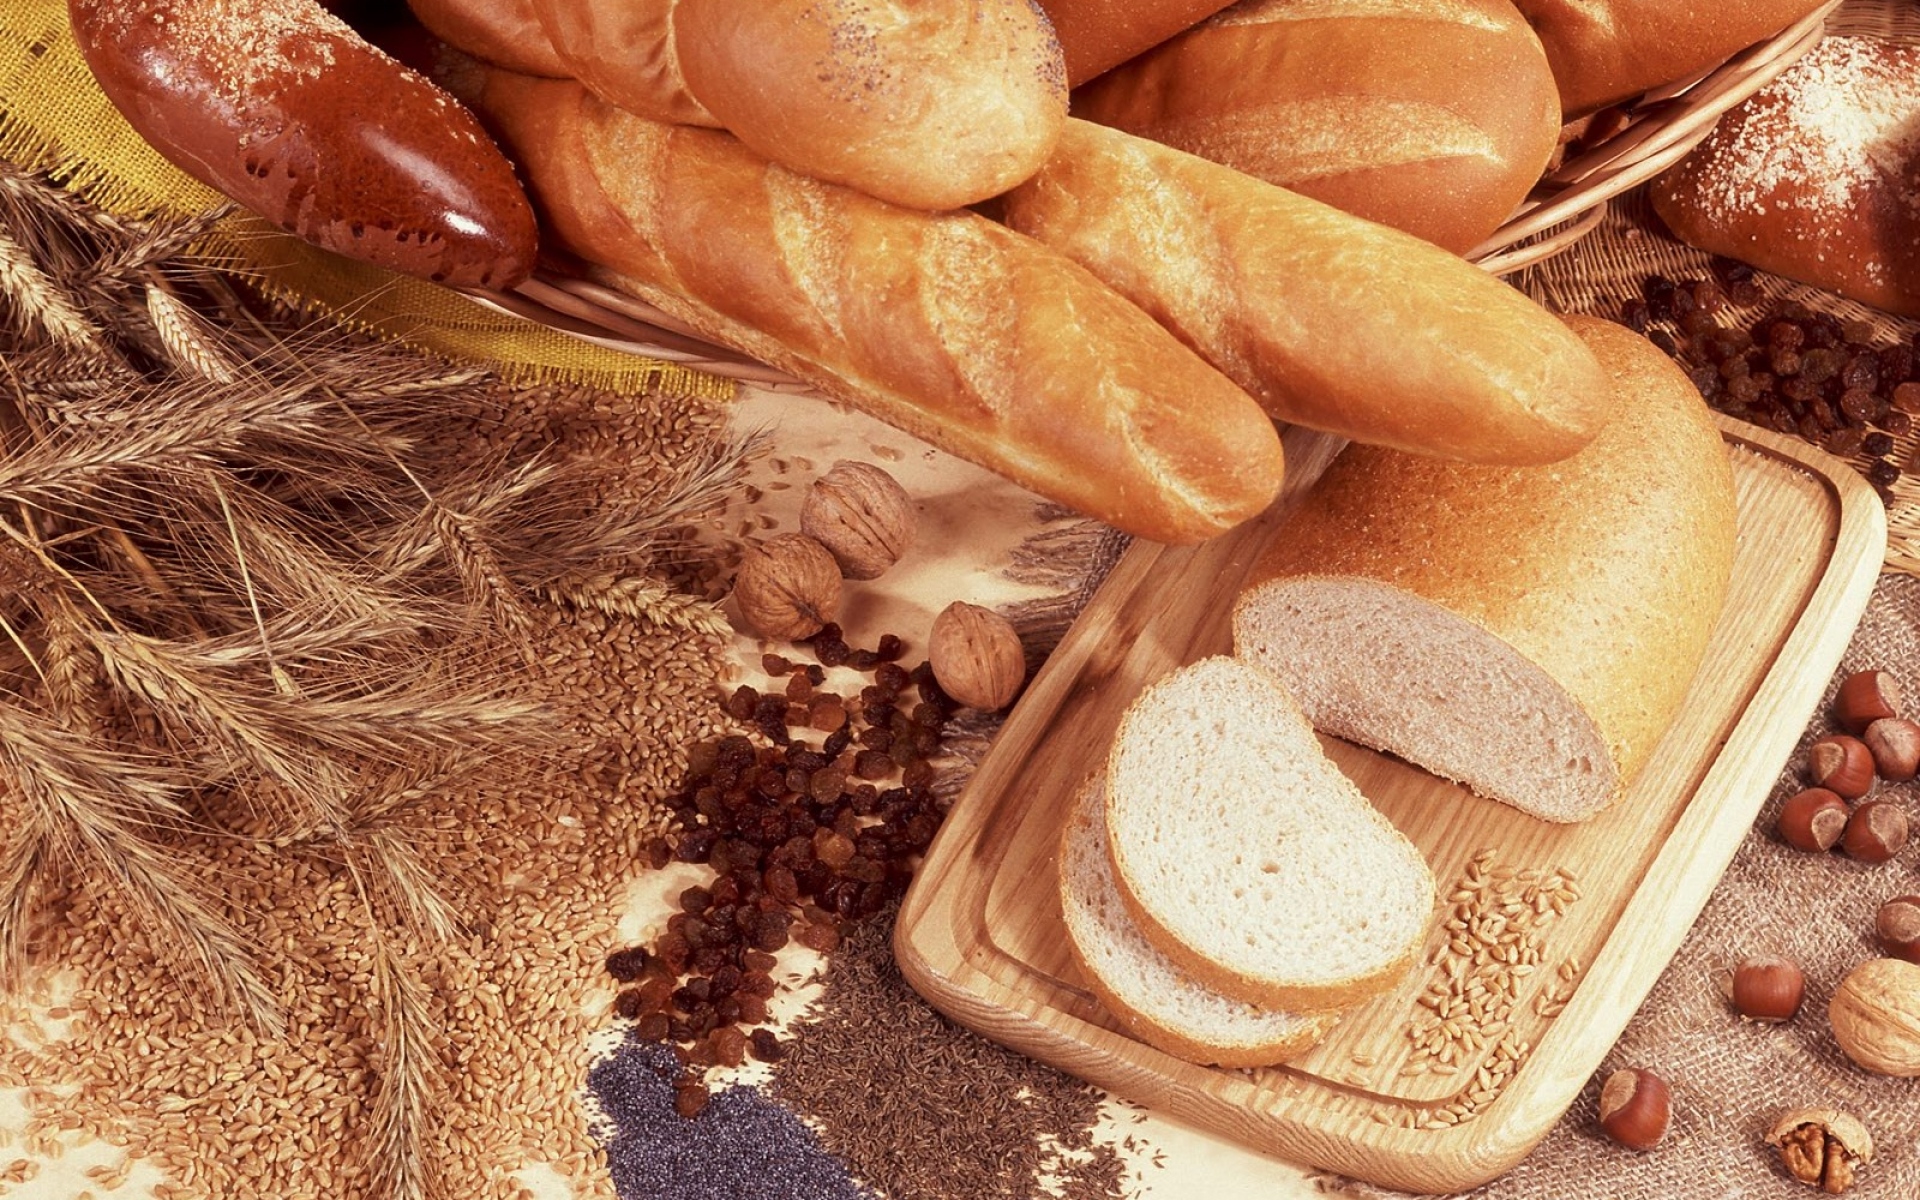 Зерновые и хлебобулочные изделия